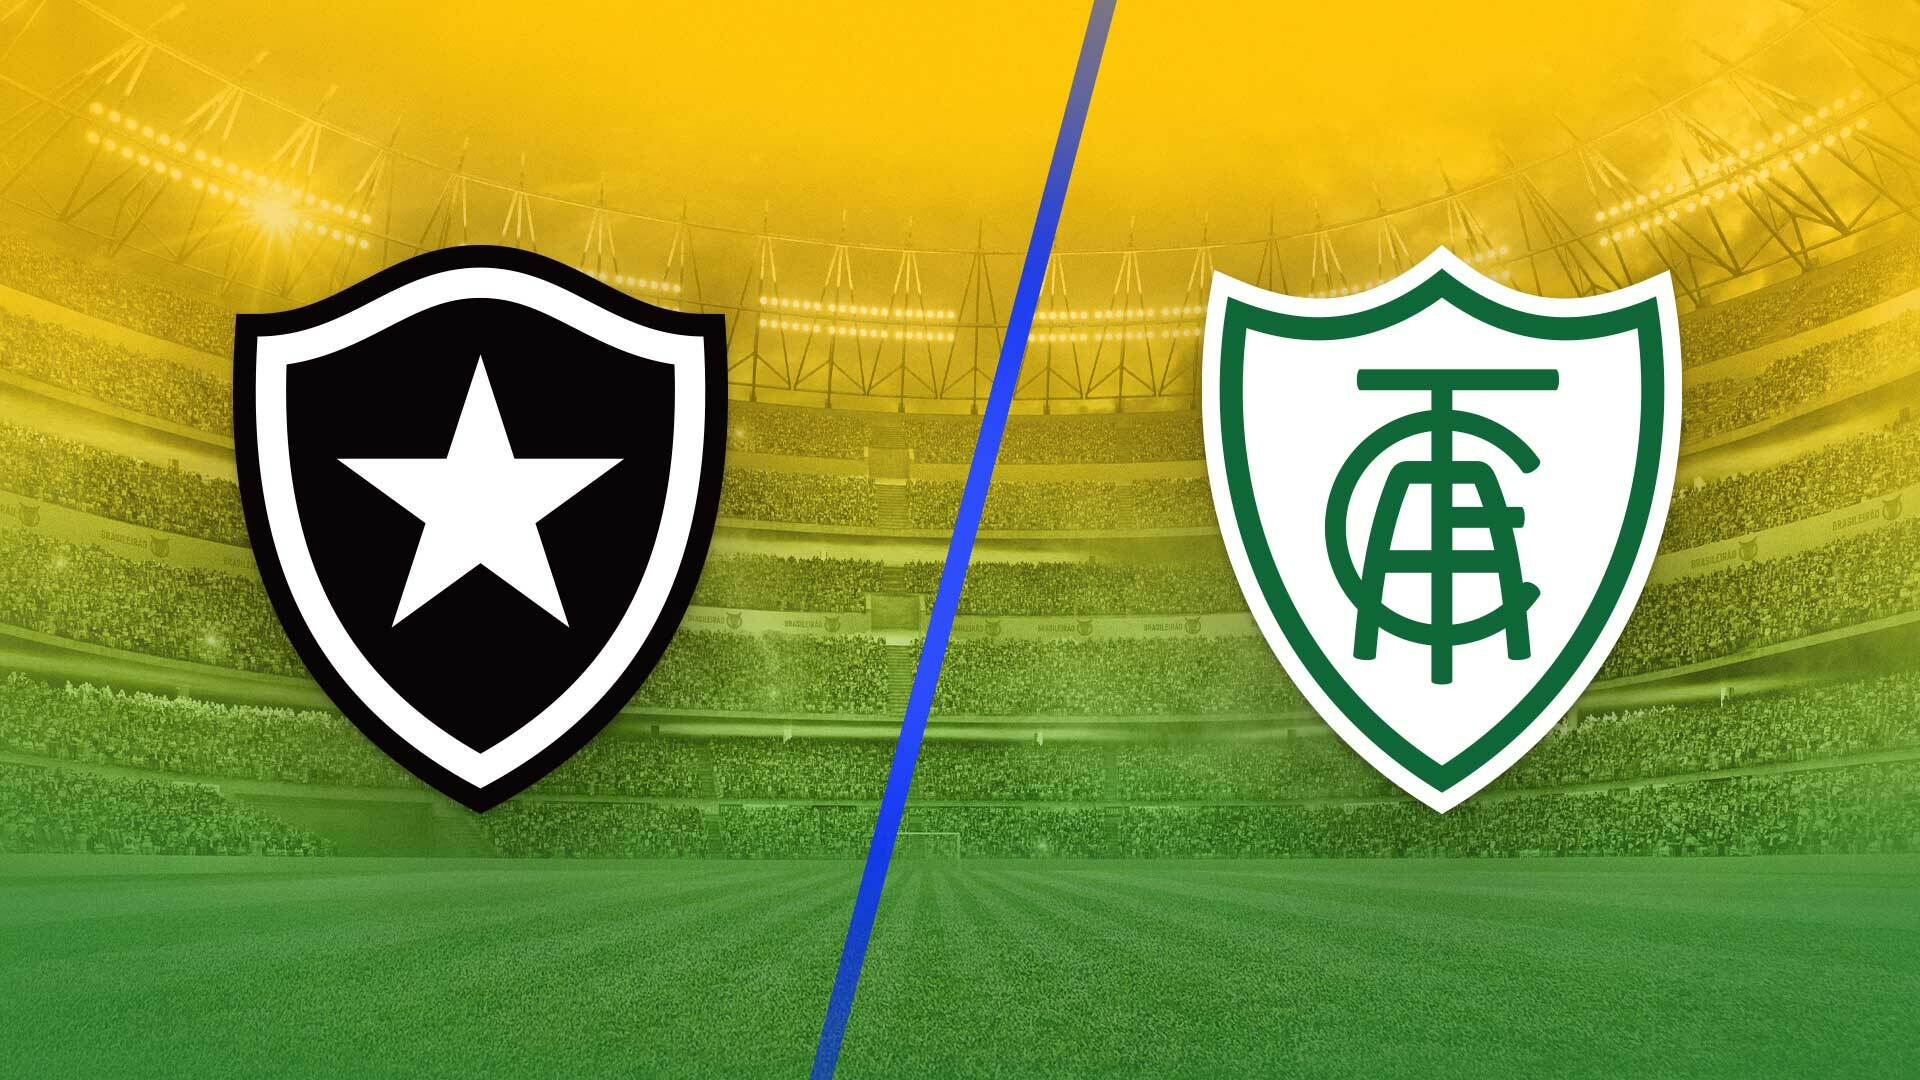 Grêmio vs Brasil de Pelotas: A Clash of Rivalry and Determination